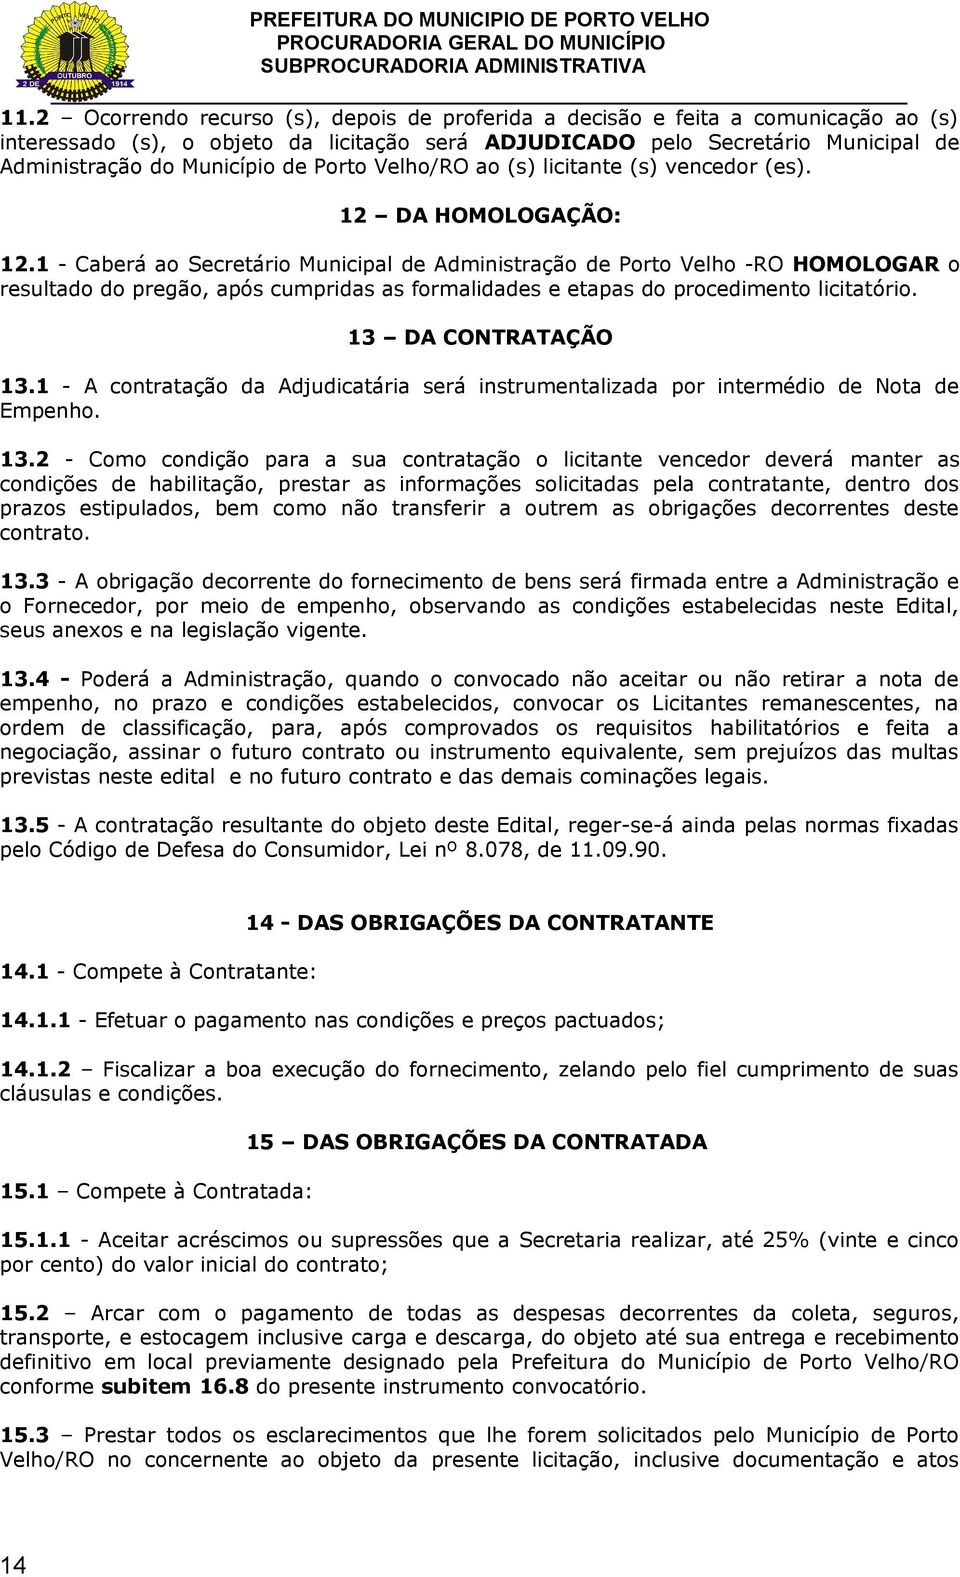 1 - Caberá ao Secretário Municipal de Administração de Porto Velho -RO HOMOLOGAR o resultado do pregão, após cumpridas as formalidades e etapas do procedimento licitatório. 13 DA CONTRATAÇÃO 13.